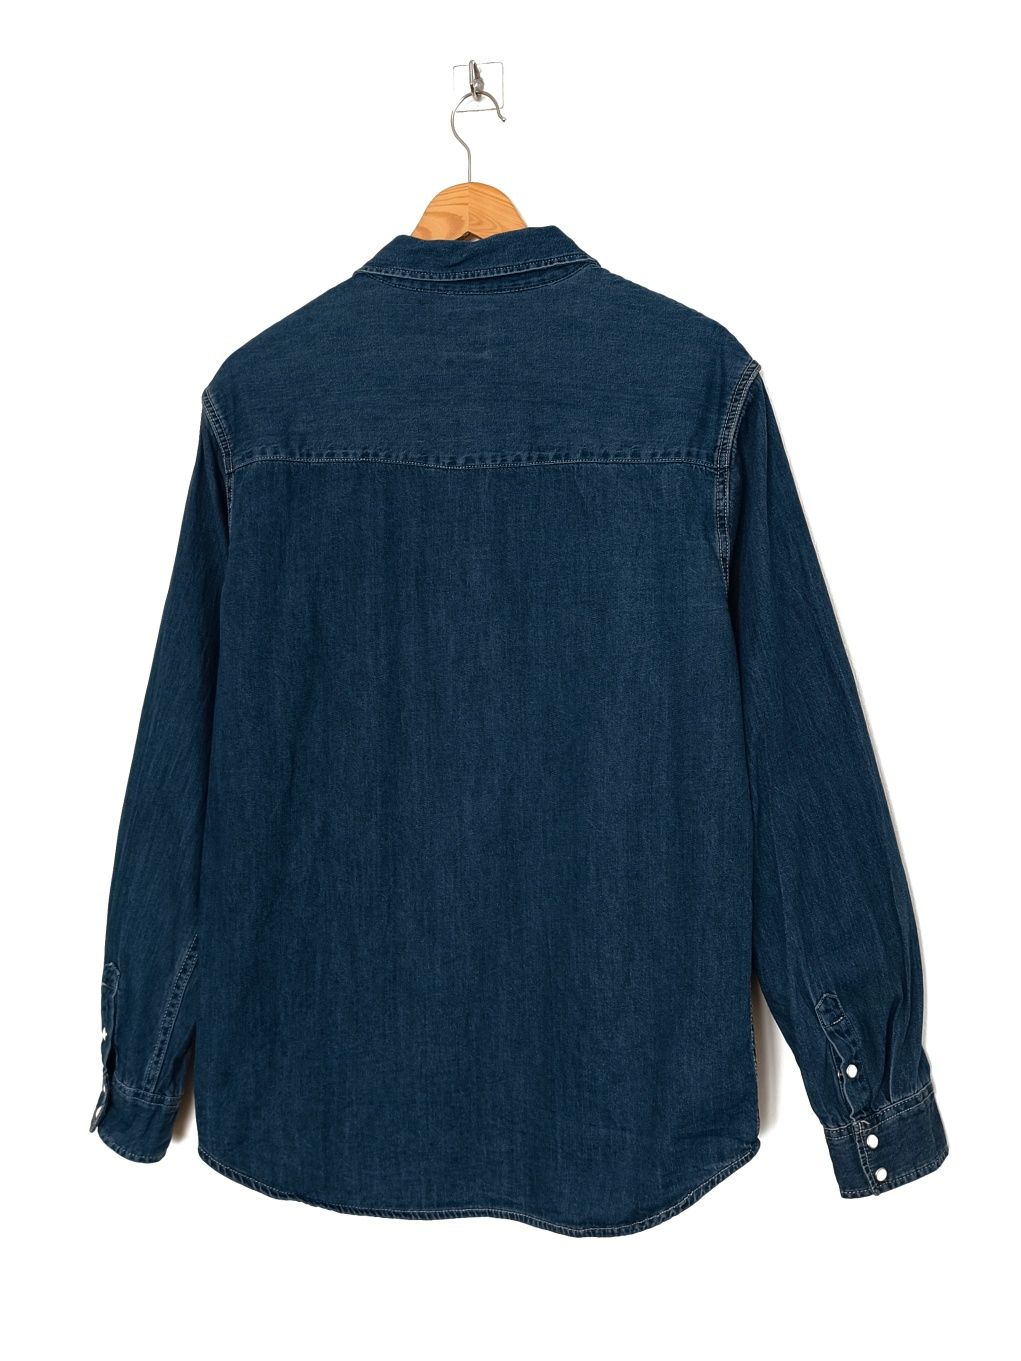 Koszula jeansowa męska z tkaniny bawełnianej | Zara M